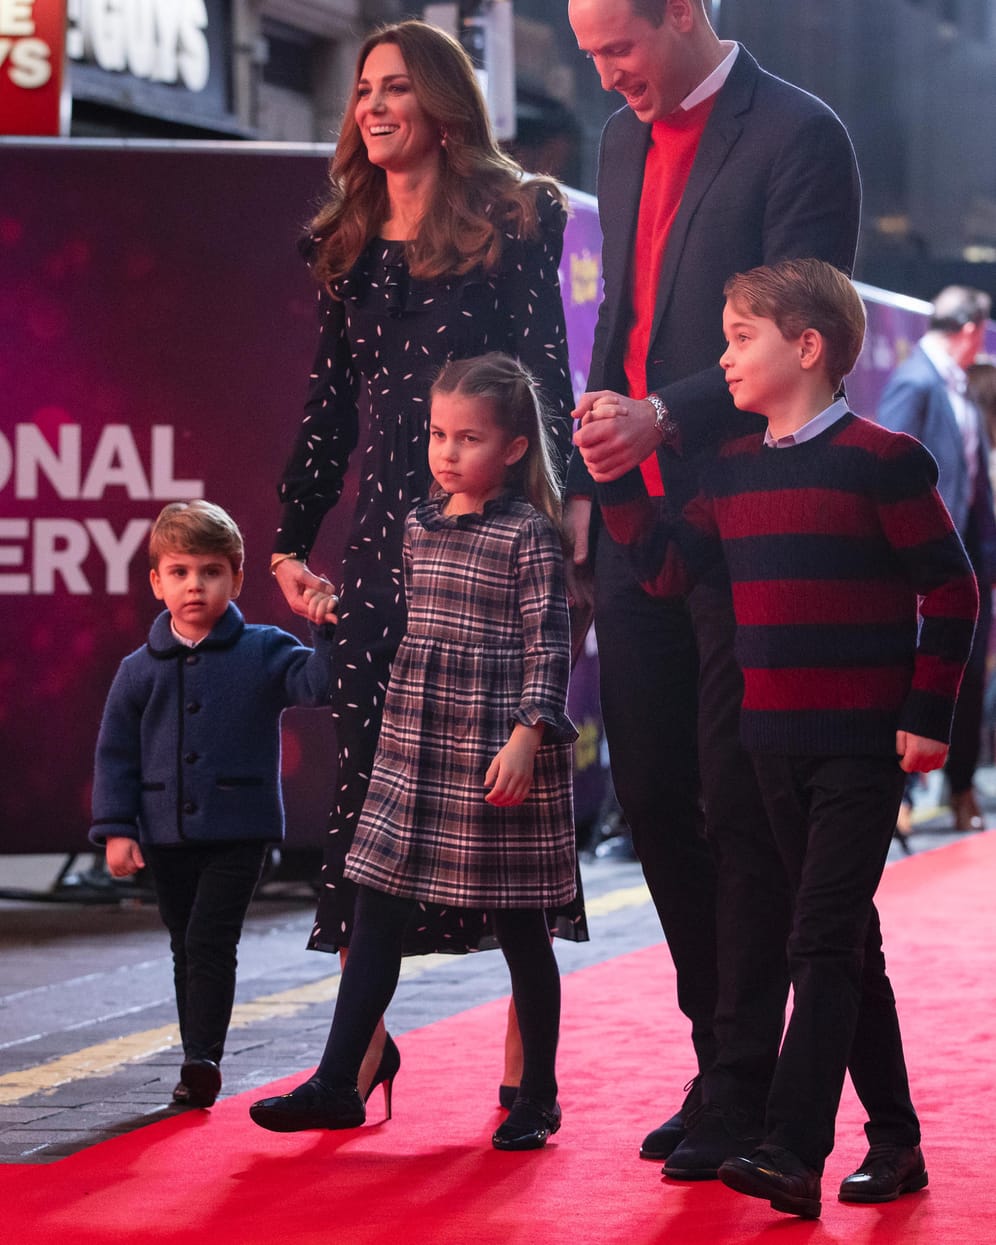 Dezember 2020: Herzogin Kate und Prinz William besuchen mit ihren Kindern Louis, Charlotte und George eine Veranstaltung in London.